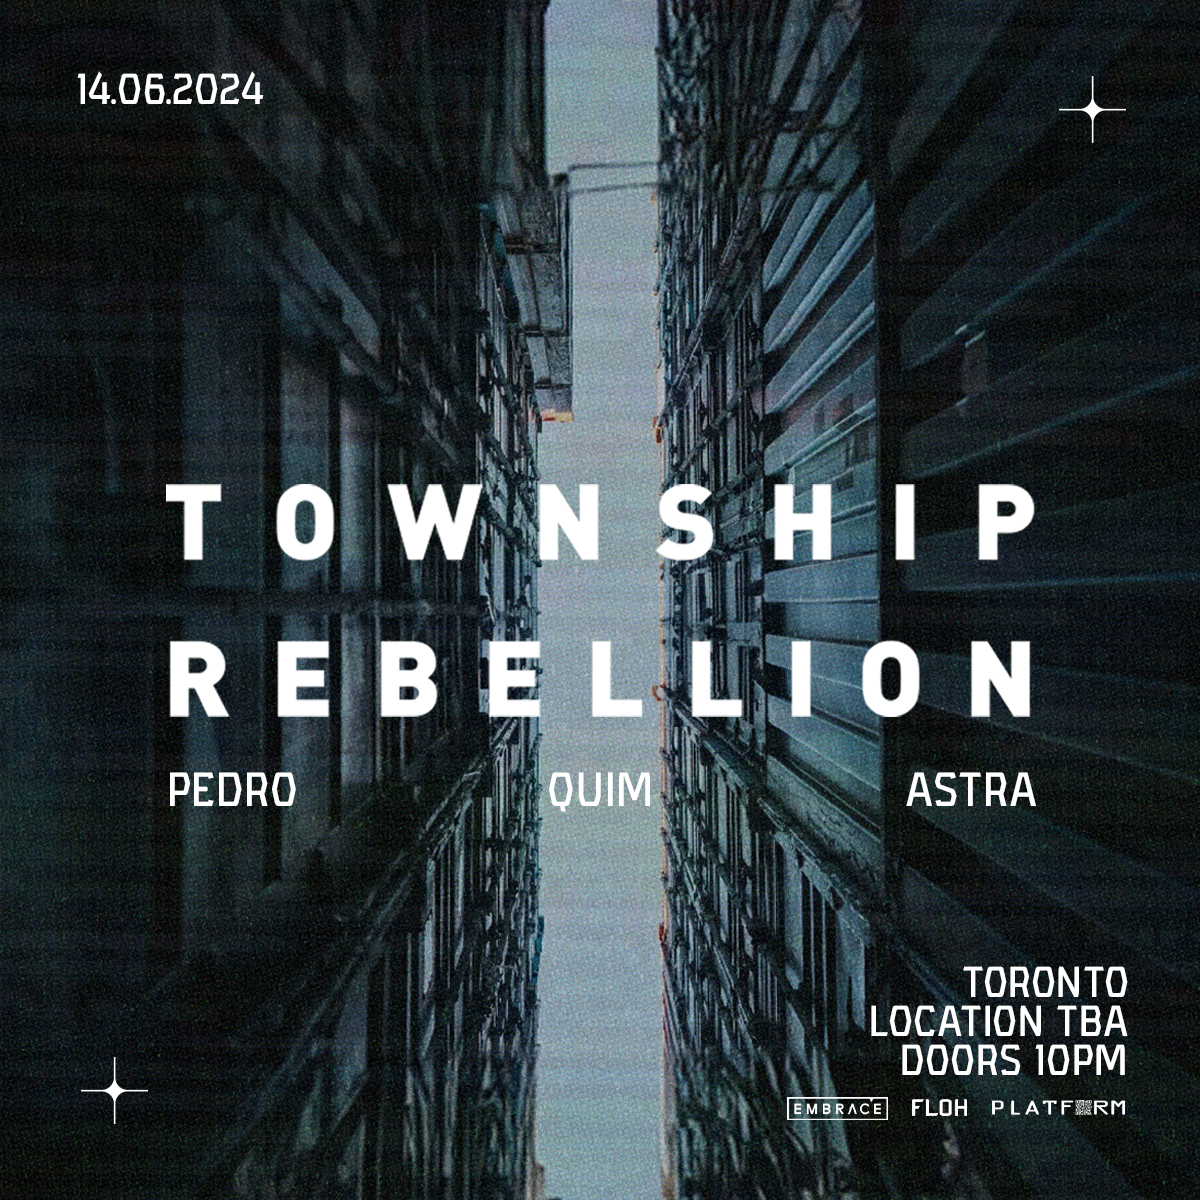 Township Rebellion - フライヤー表